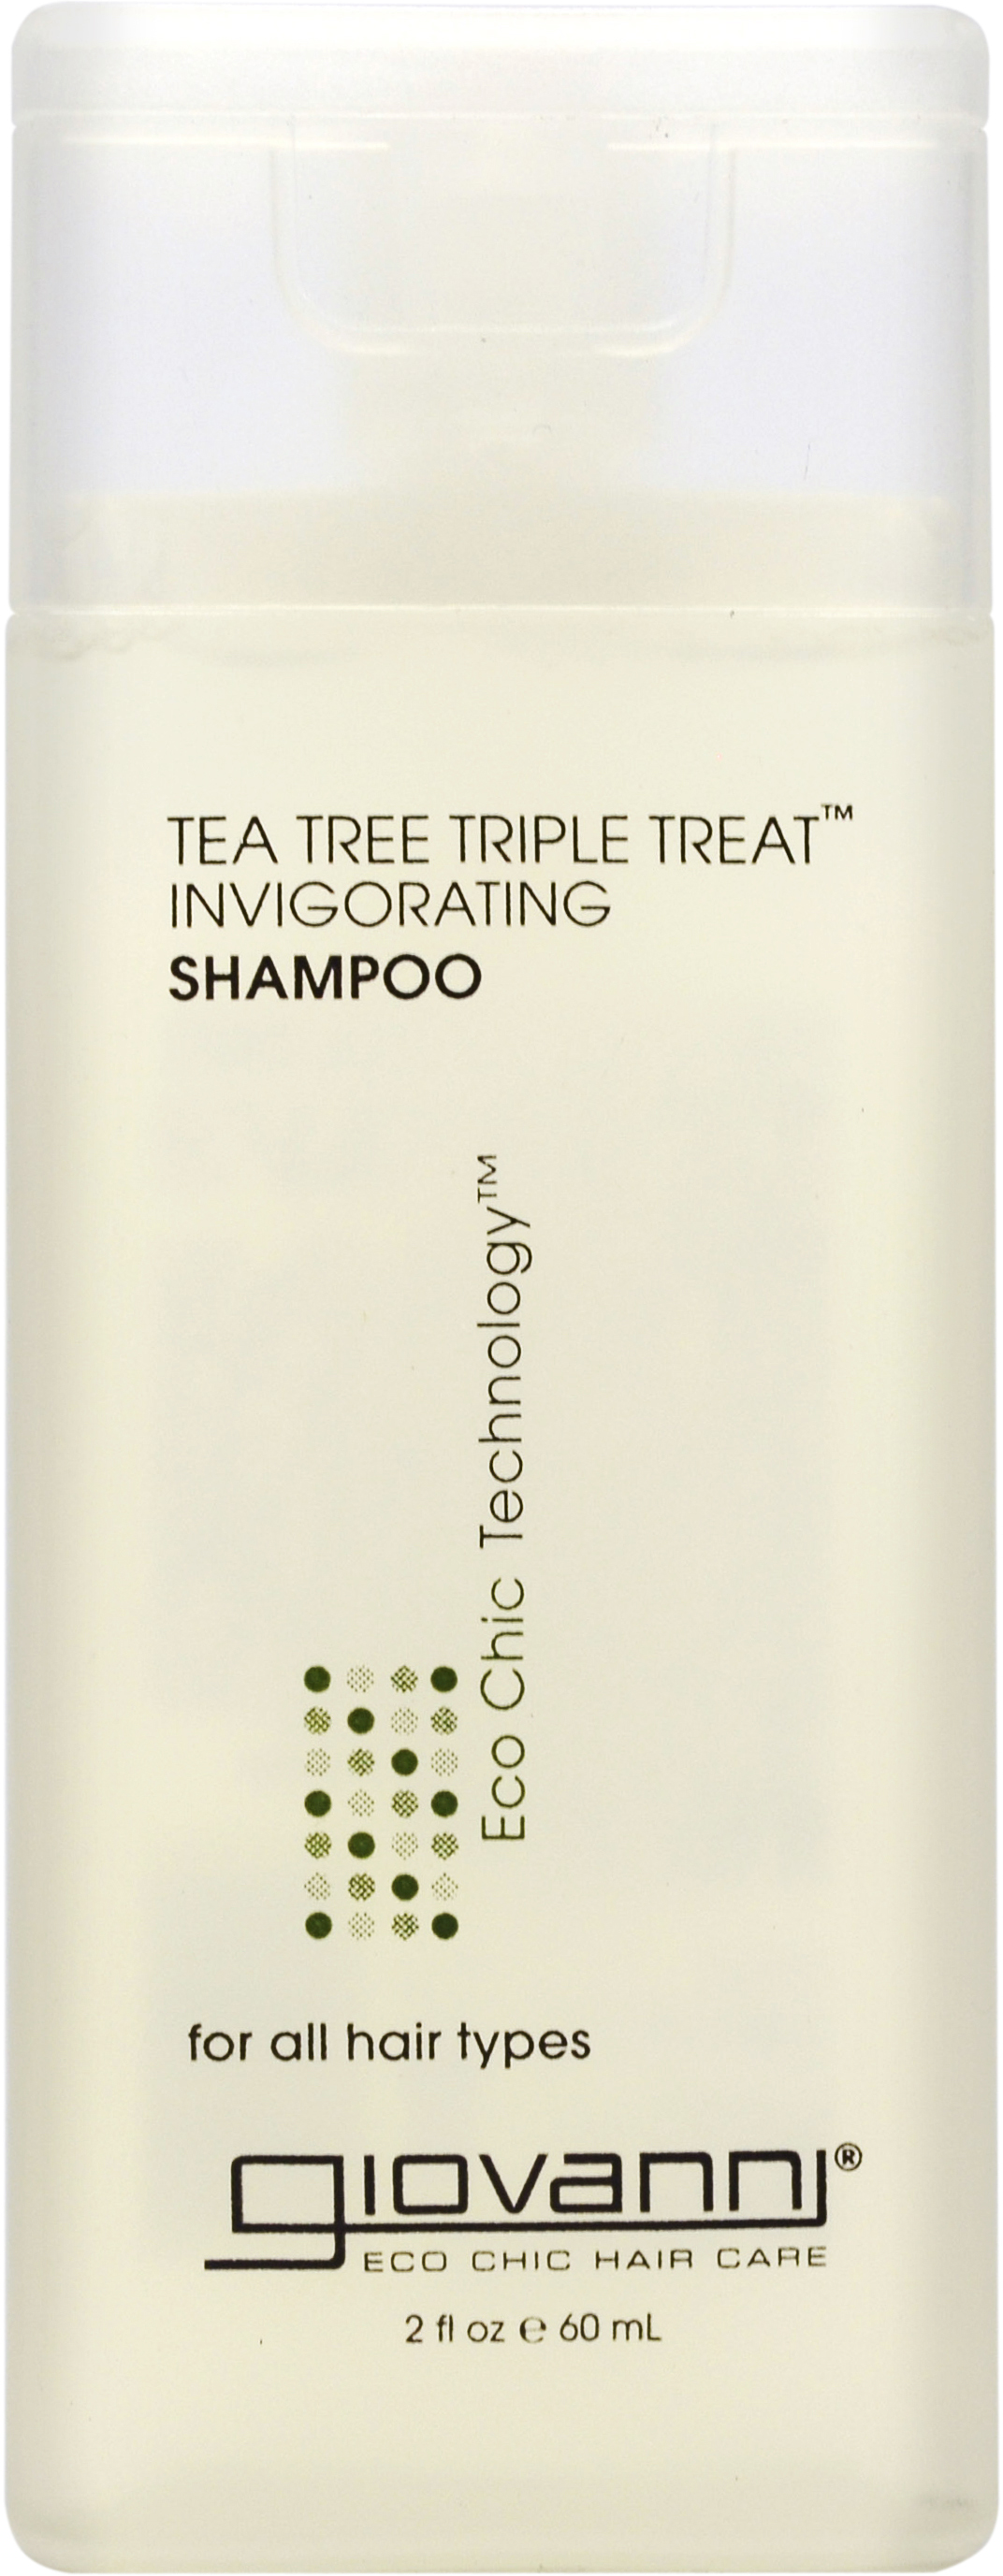 Tea Tree Triple Treat Sham (60ml)